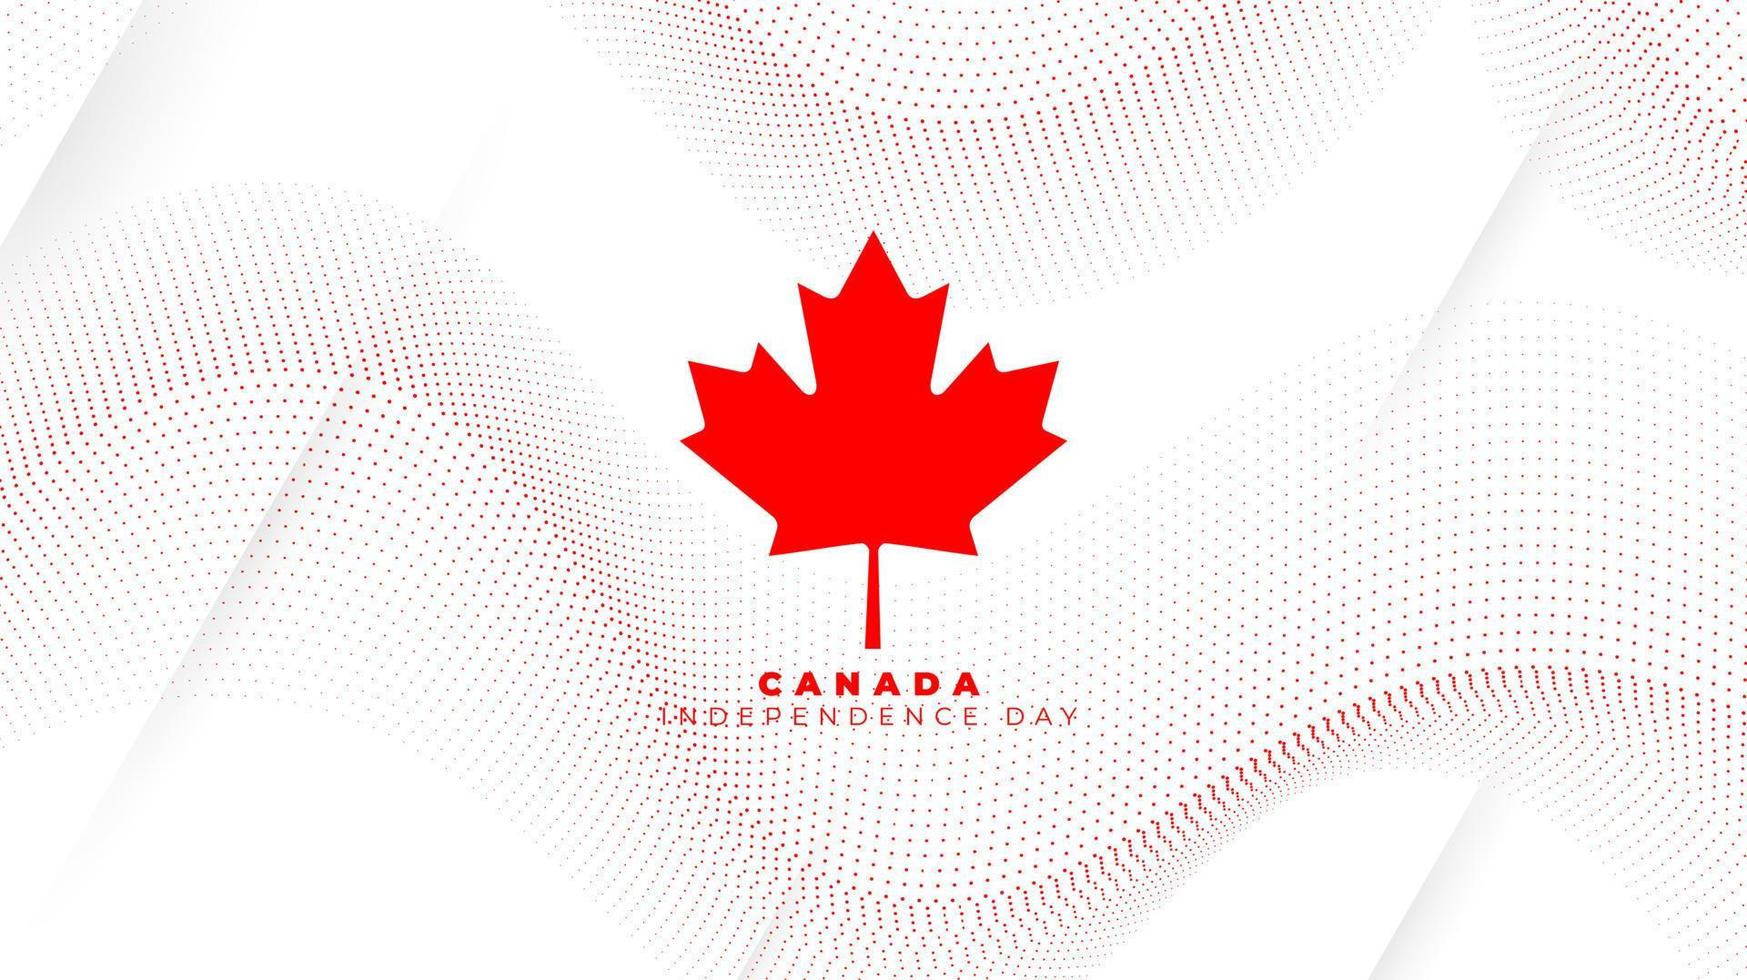 wuivende stippen op een witte achtergrond met esdoornblad in de vlag van Canada voor het ontwerp van de onafhankelijkheidsdag van Canada vector